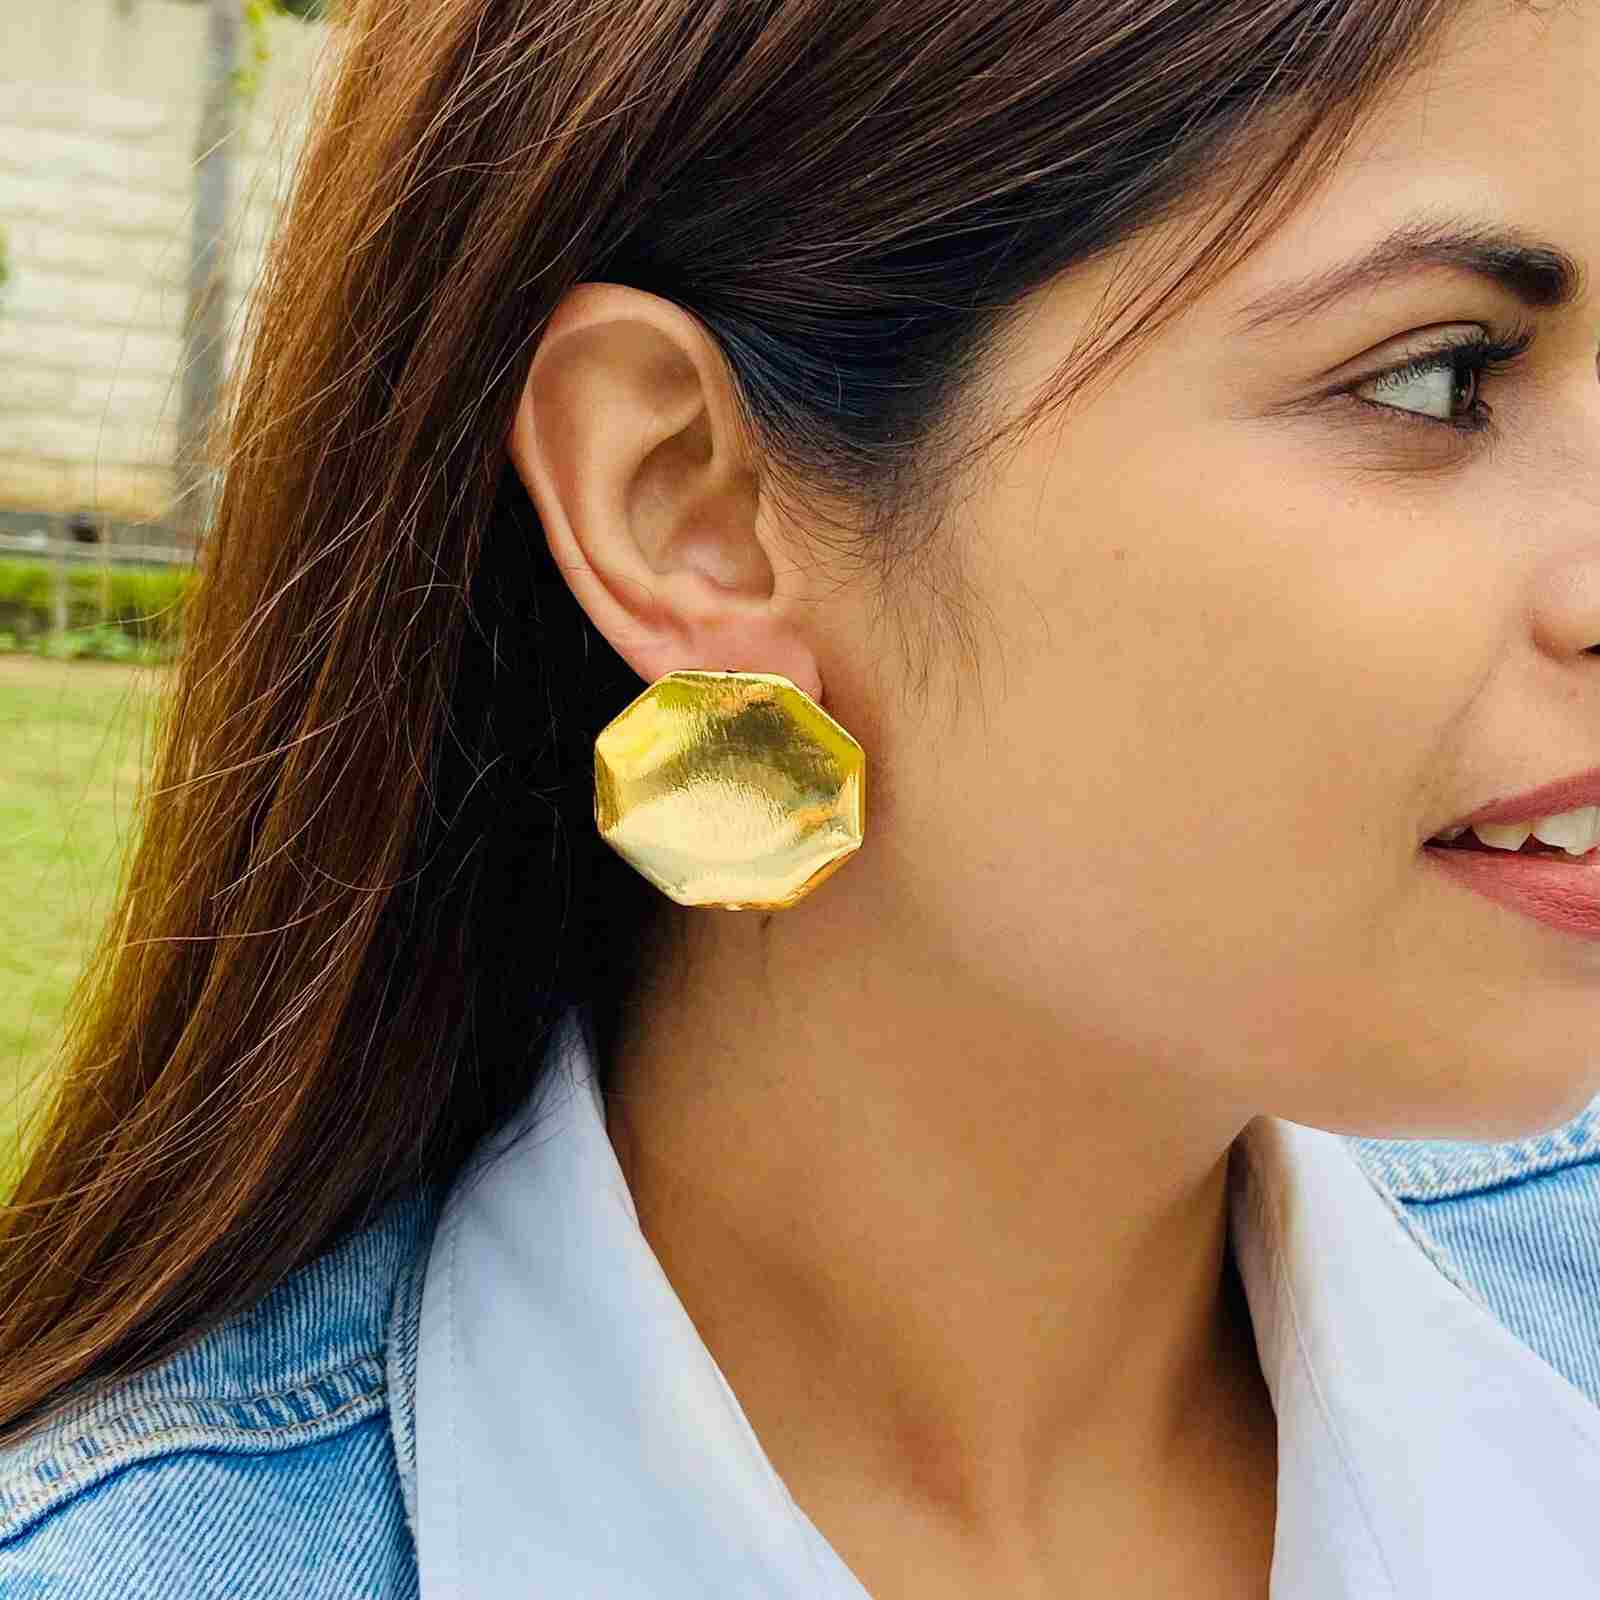 22K Gold Earrings For Women - 235-GER16359 in 2.700 Grams